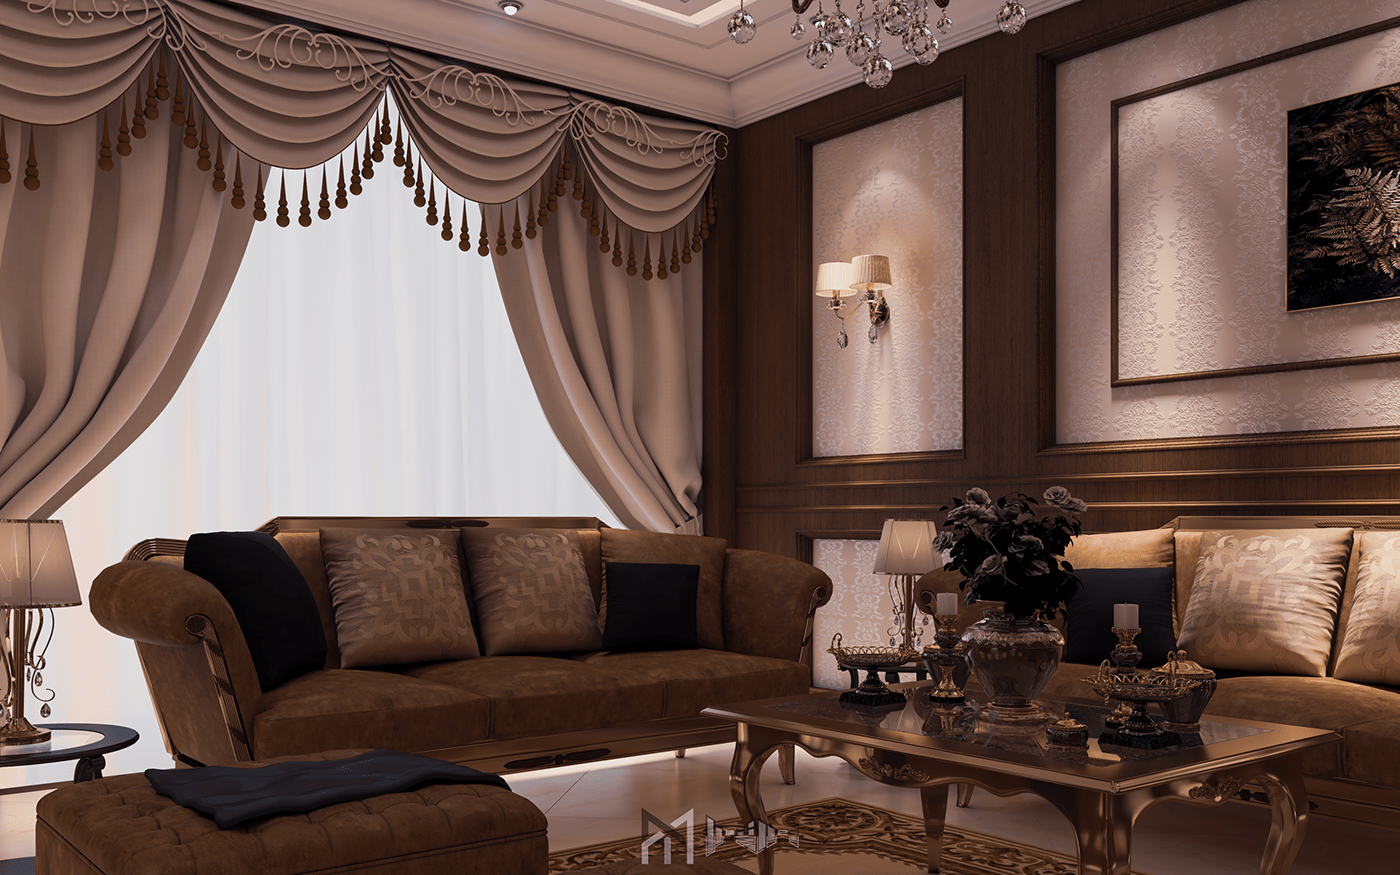 Classic decor decorative design Interior NEWCLASSIC reception visualization